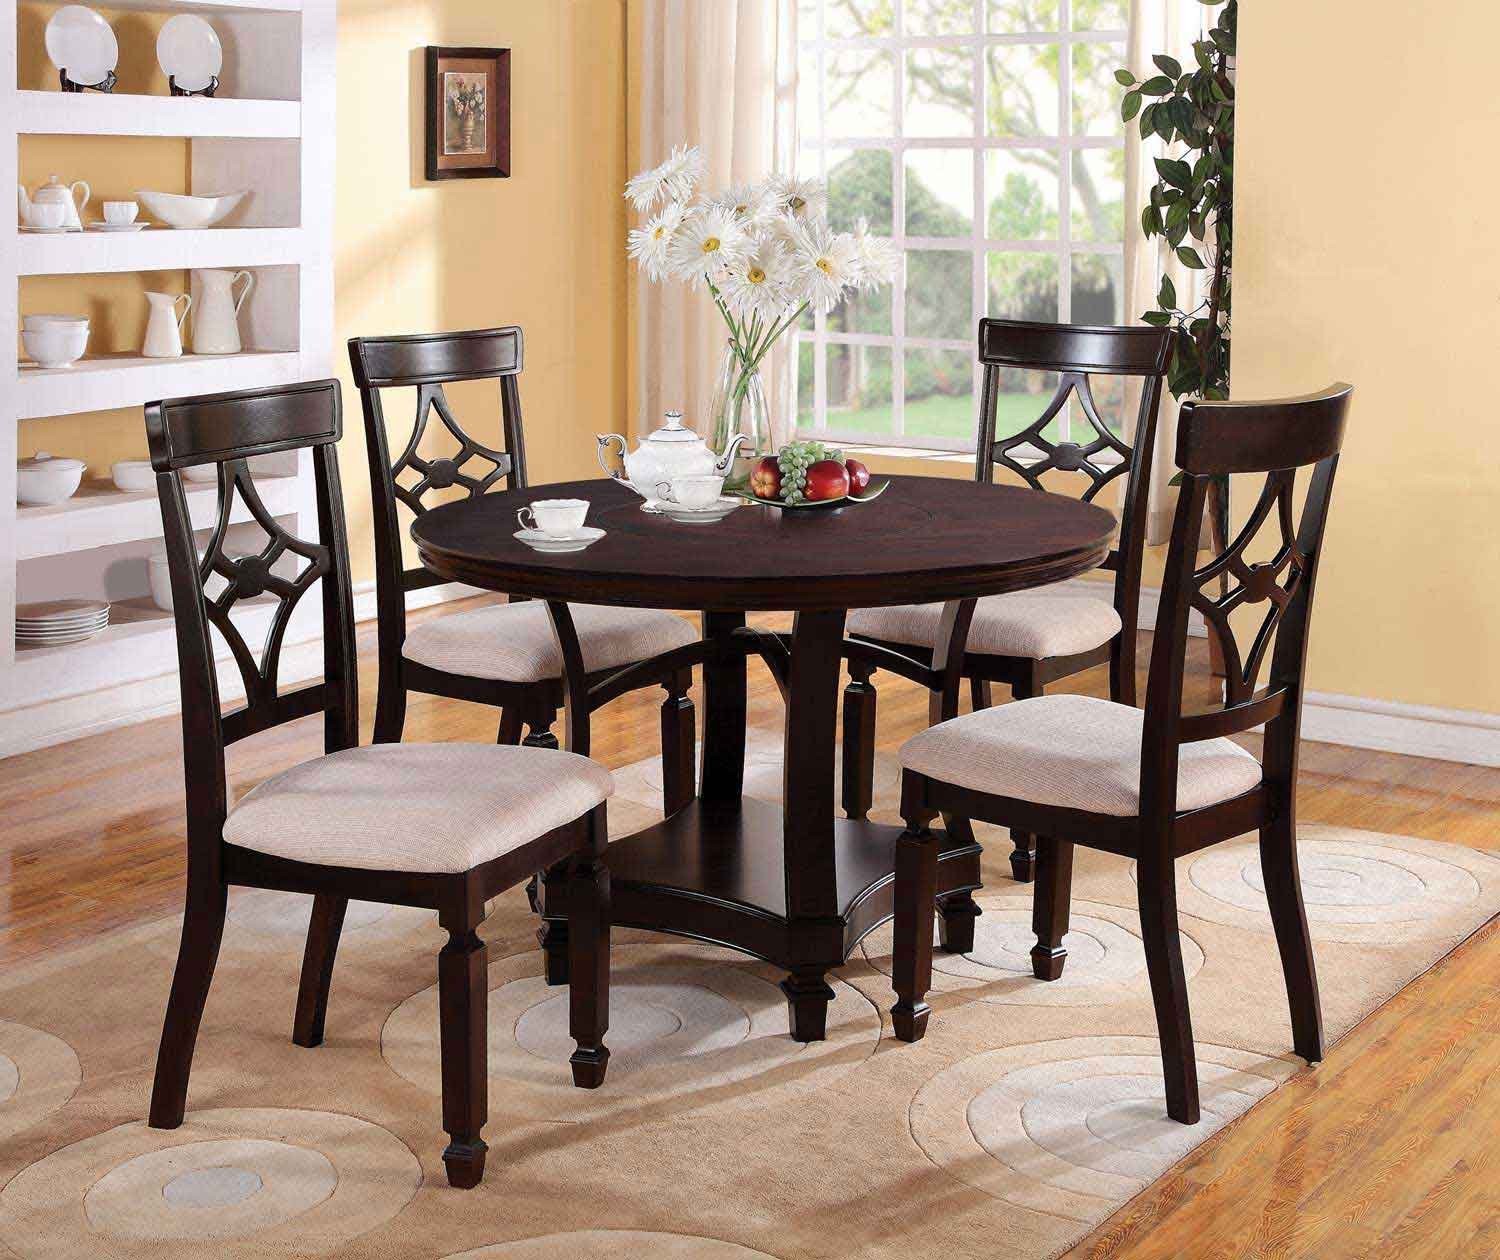 Кухонный комплект стол и стулья. Стол Alto Cappuccino. Стол кухонный. Столы и стулья для кухни. Обеденный стол и стулья.